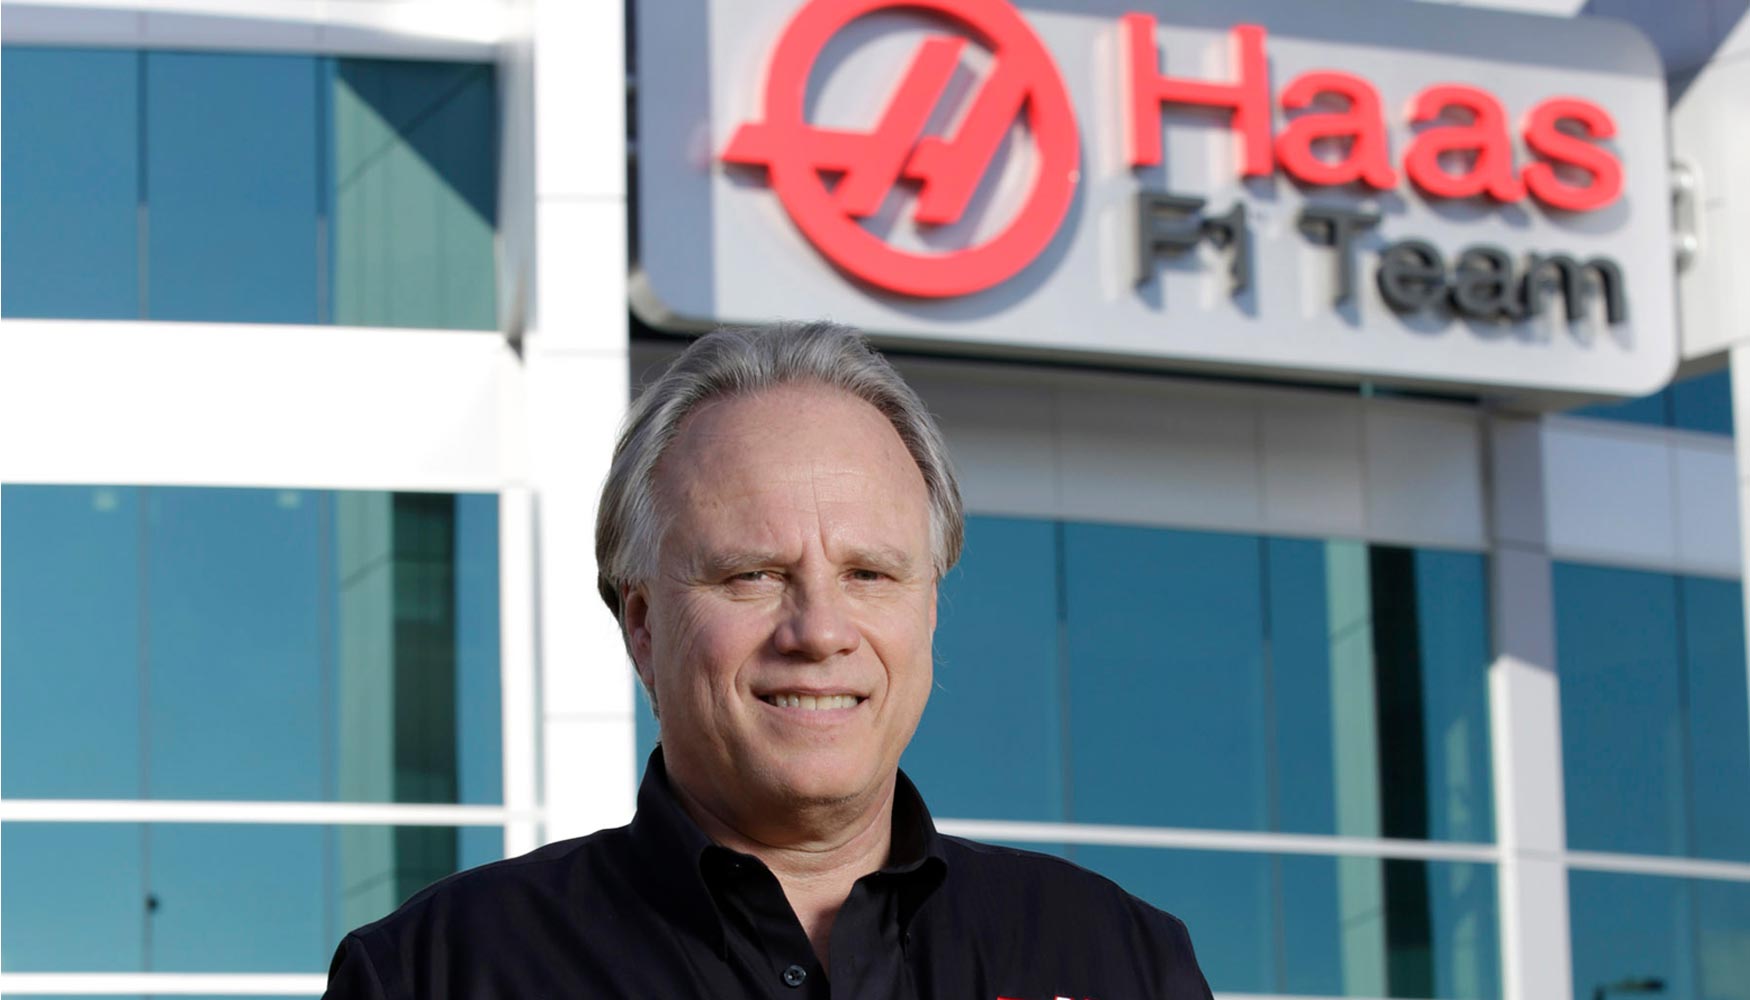 Gene Haas, presidente del equipo Haas F1 y propietario de Haas Automation